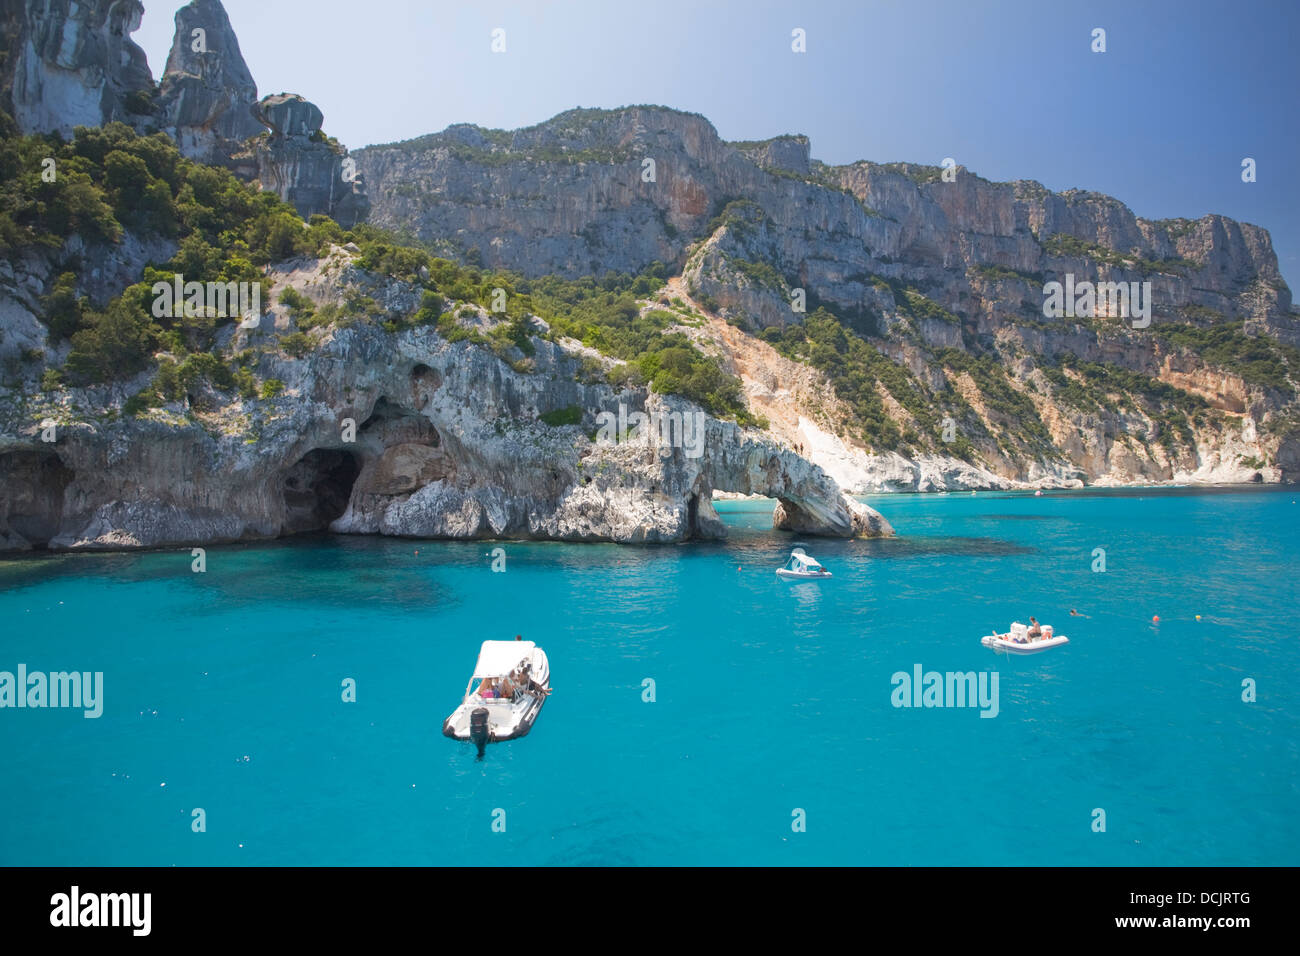 Boote auf dem kristallklaren Wasser des Golfo di Orosei, Sardinien, Italien Stockfoto